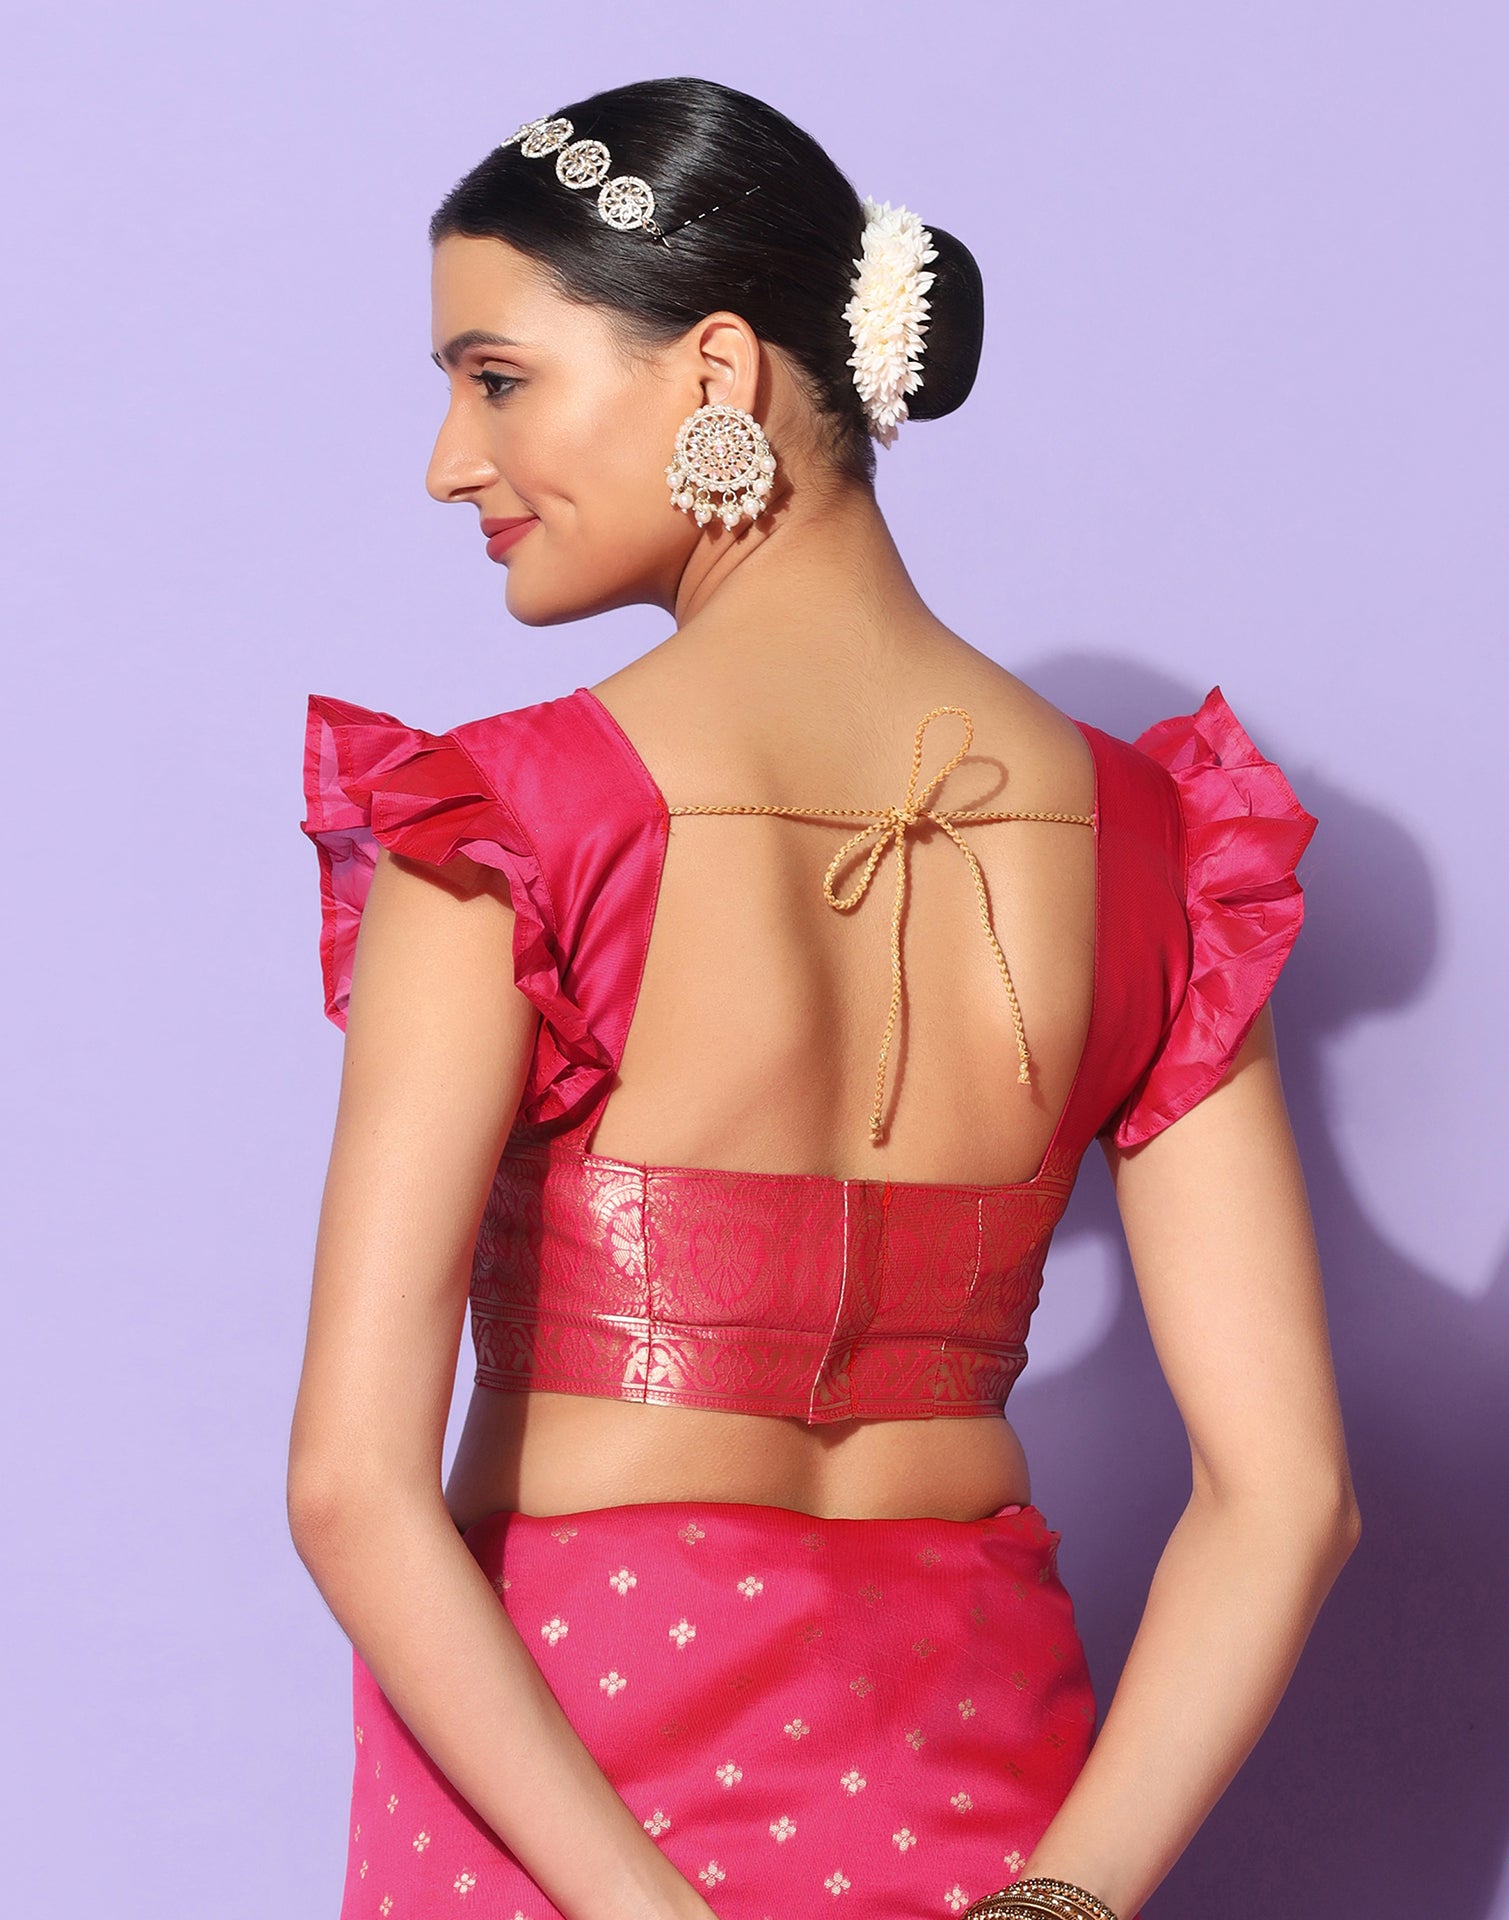 Pink And Golden Banarasi Silk Saree | Leemboodi